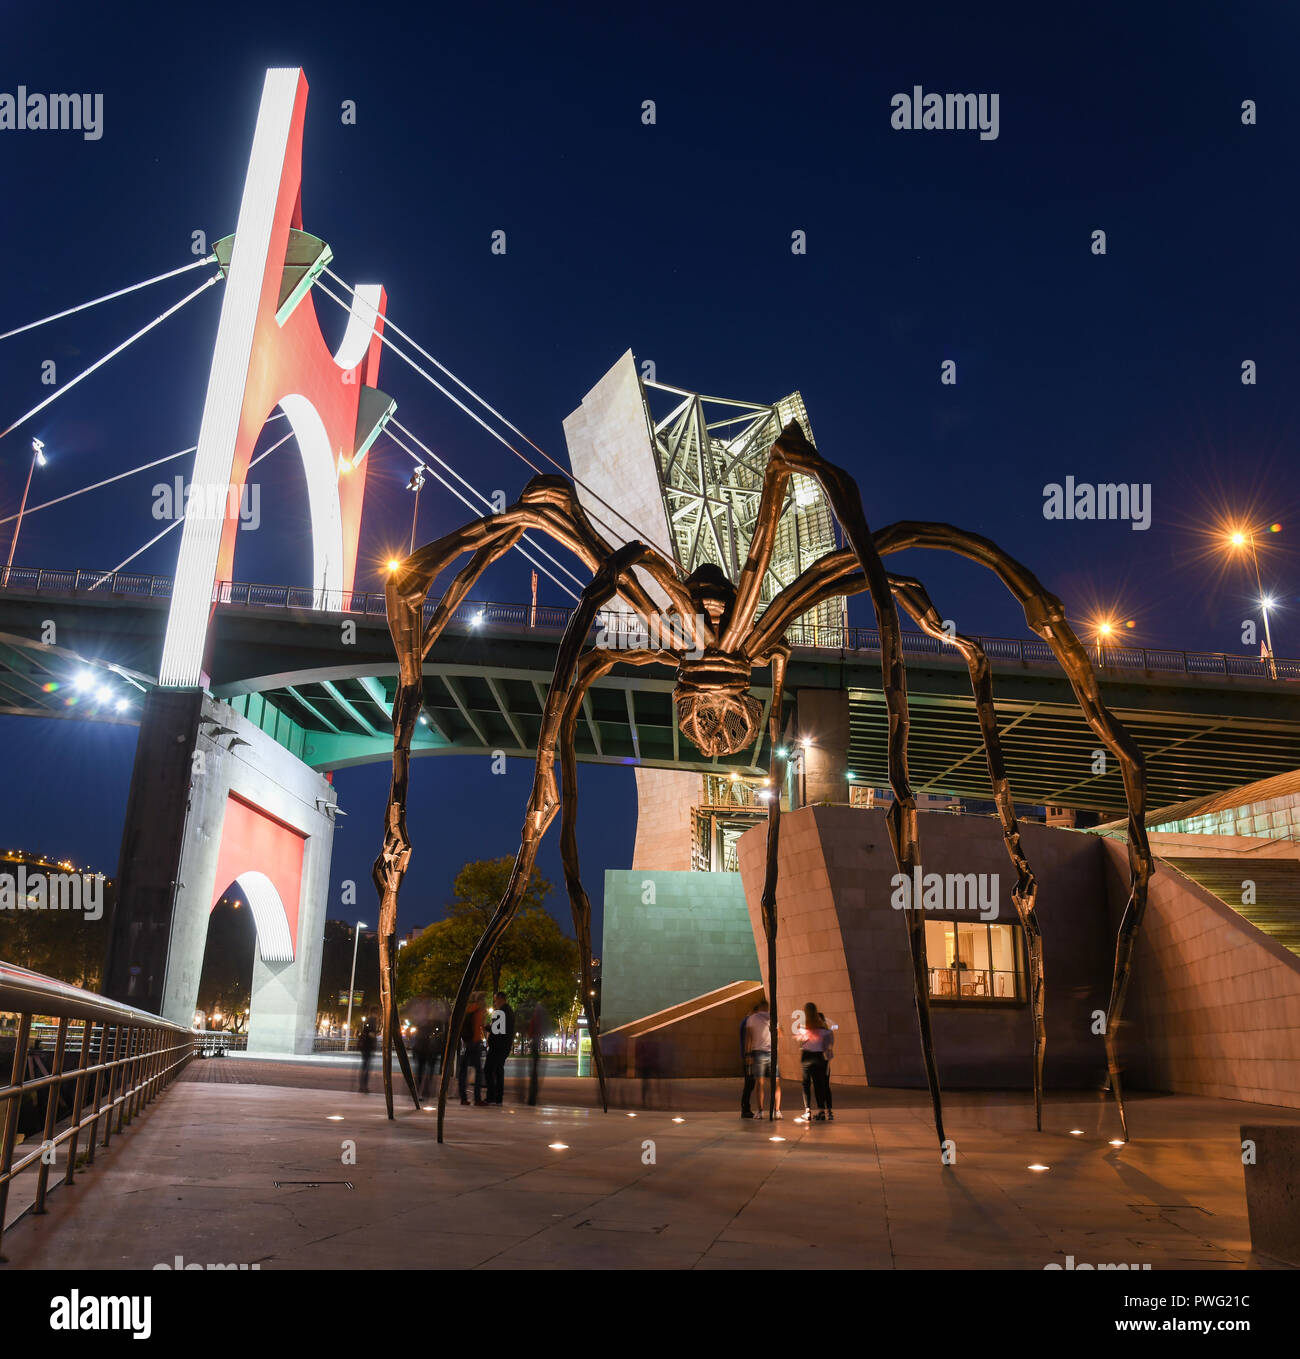 Arte moderna di Bilbao: spider e riflessi al calar della sera Foto Stock